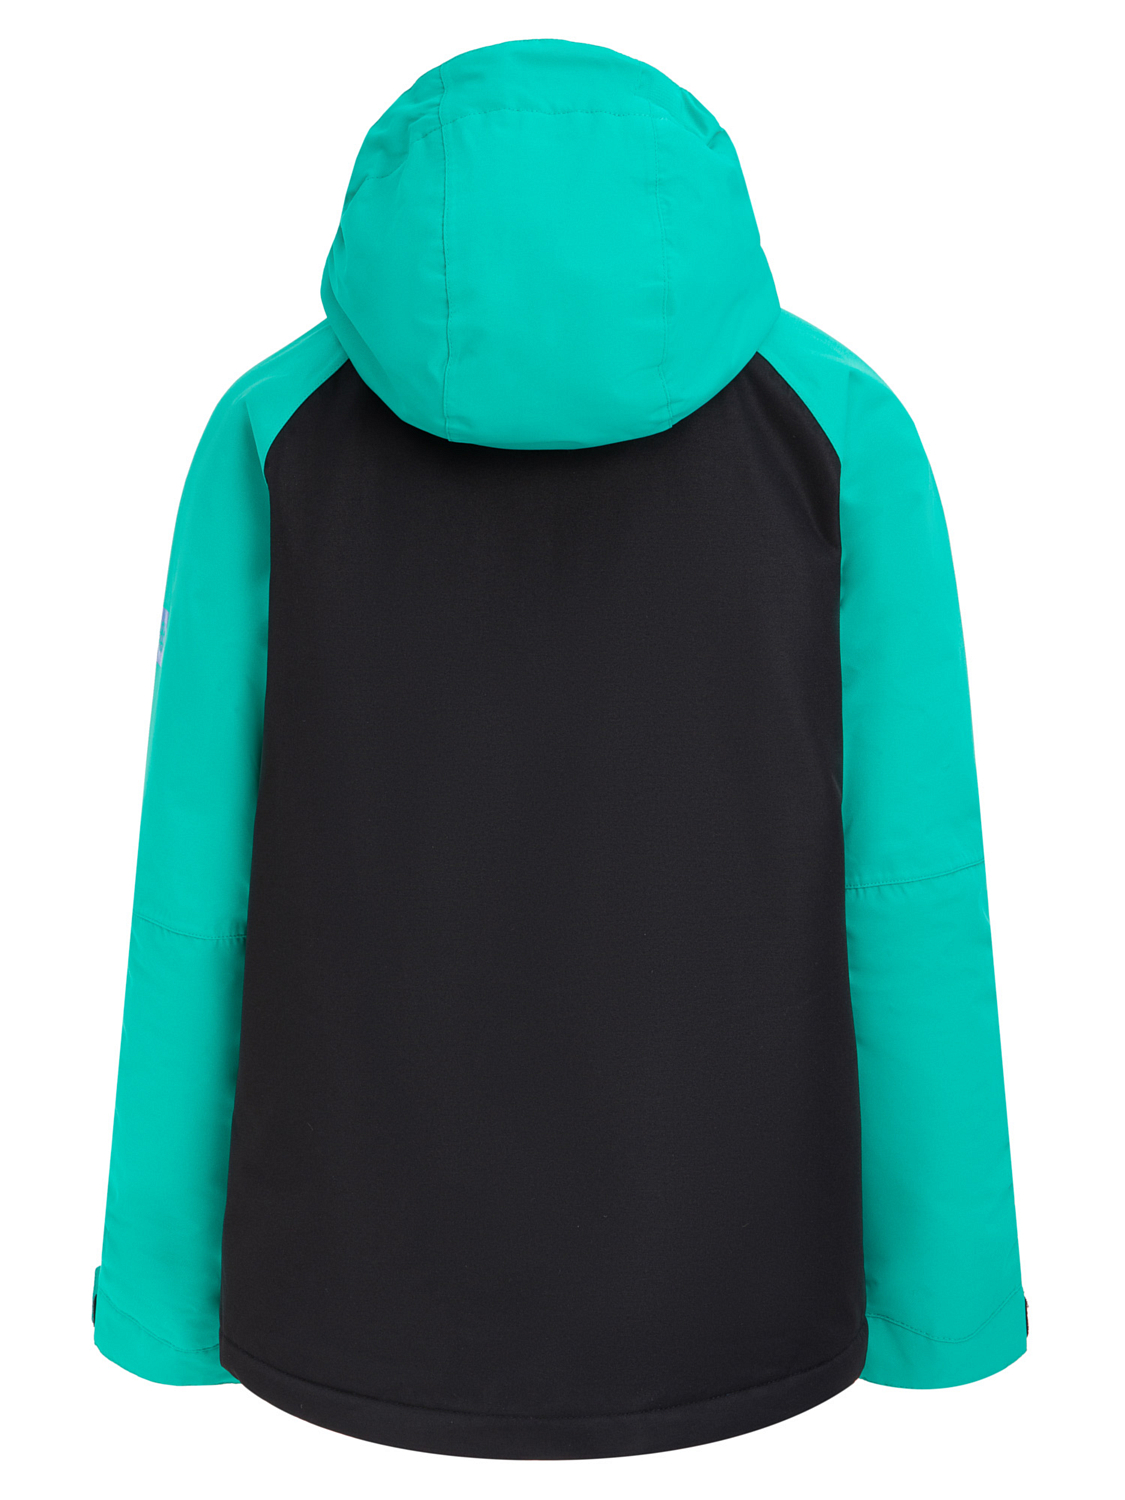 Куртка сноубордическая детская 686 Hydra Insulated Greenery/Colorblock